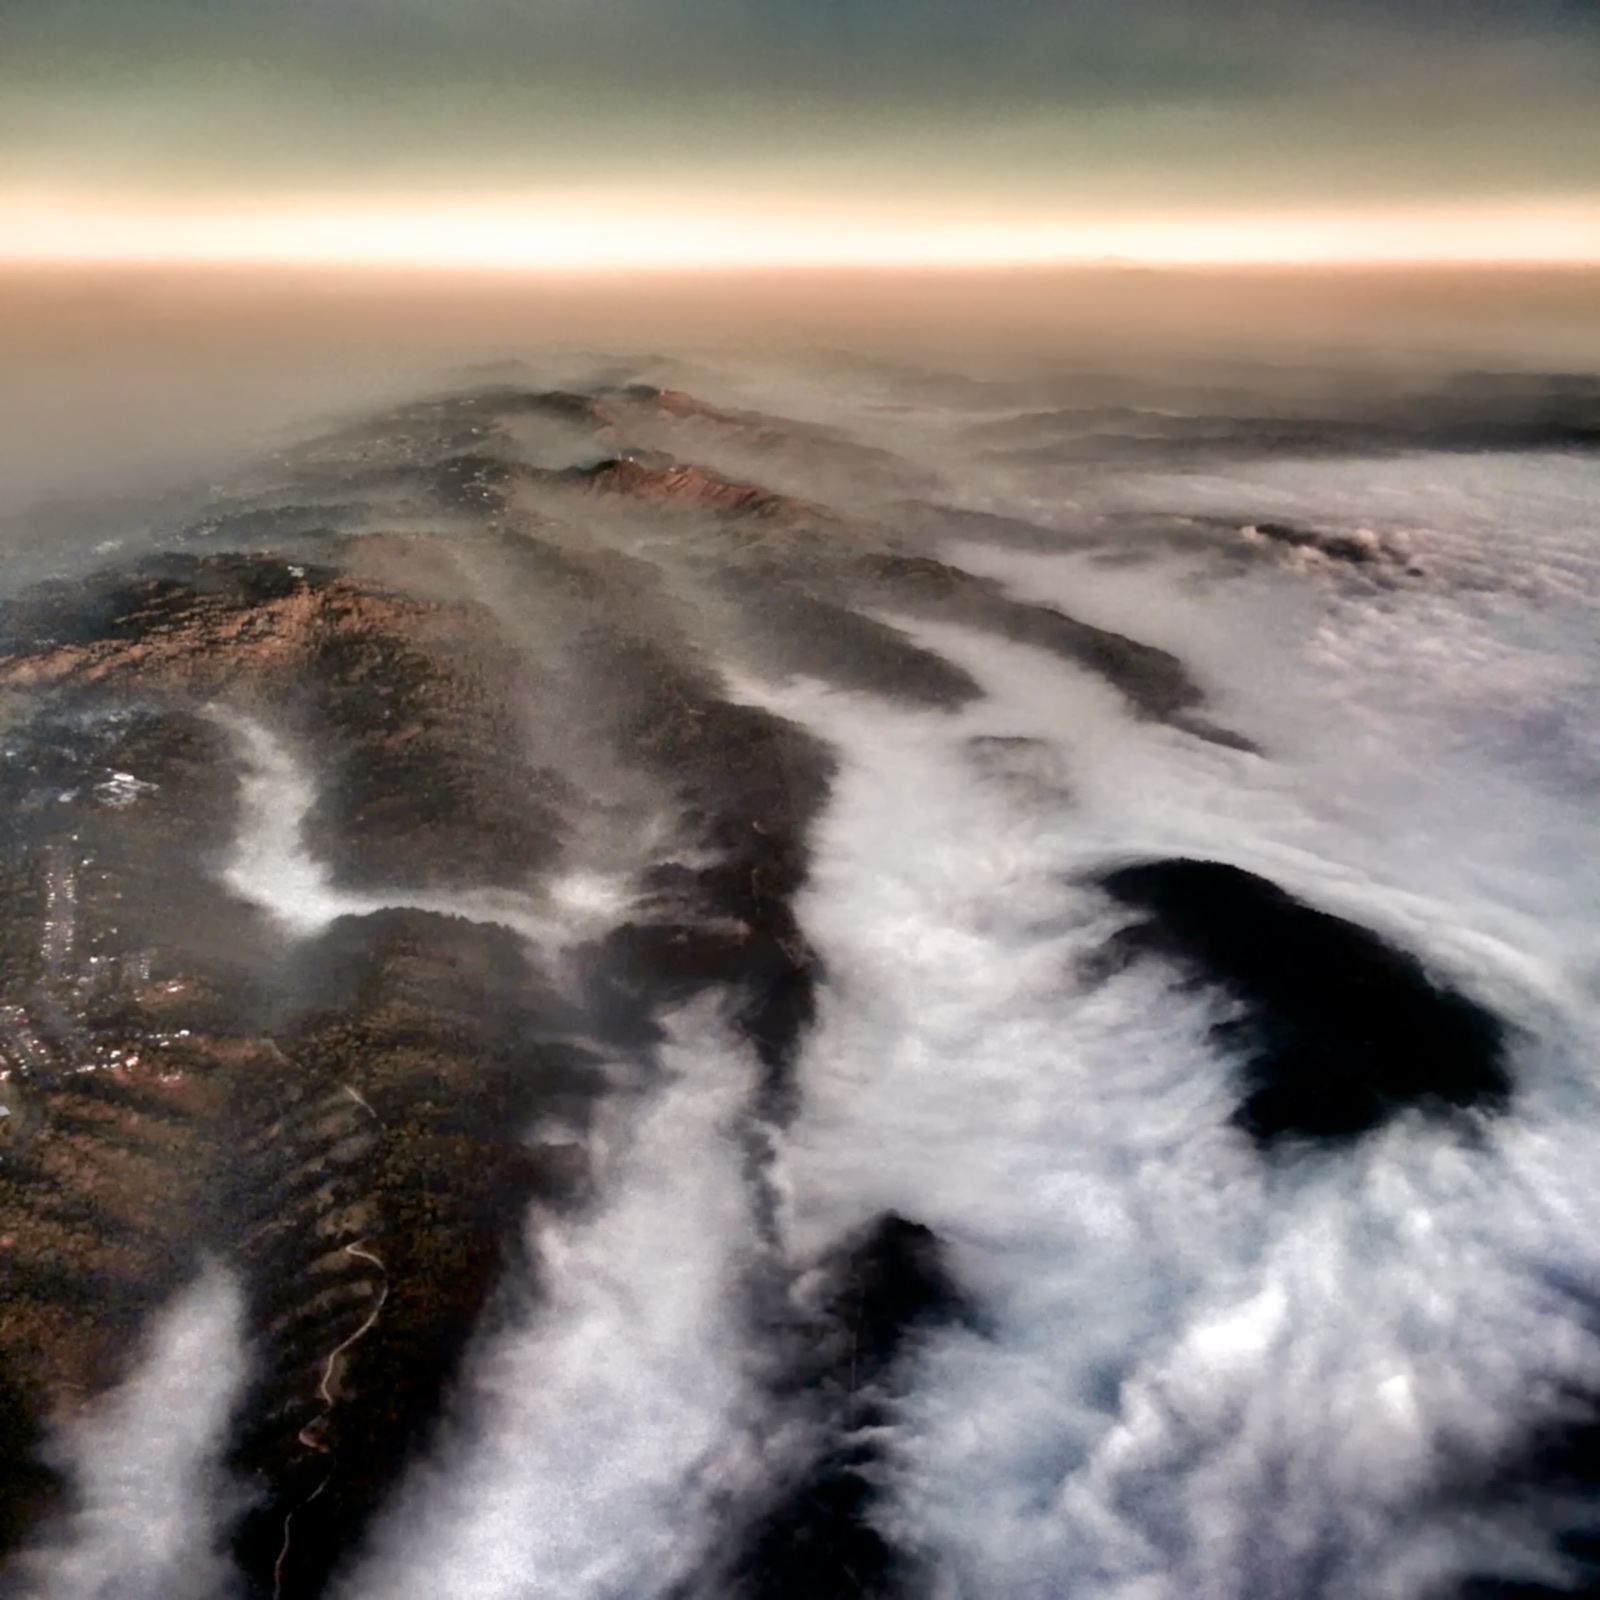 http://thedigitalstory.com/2015/01/16/Fog-Over-Valleys.jpg